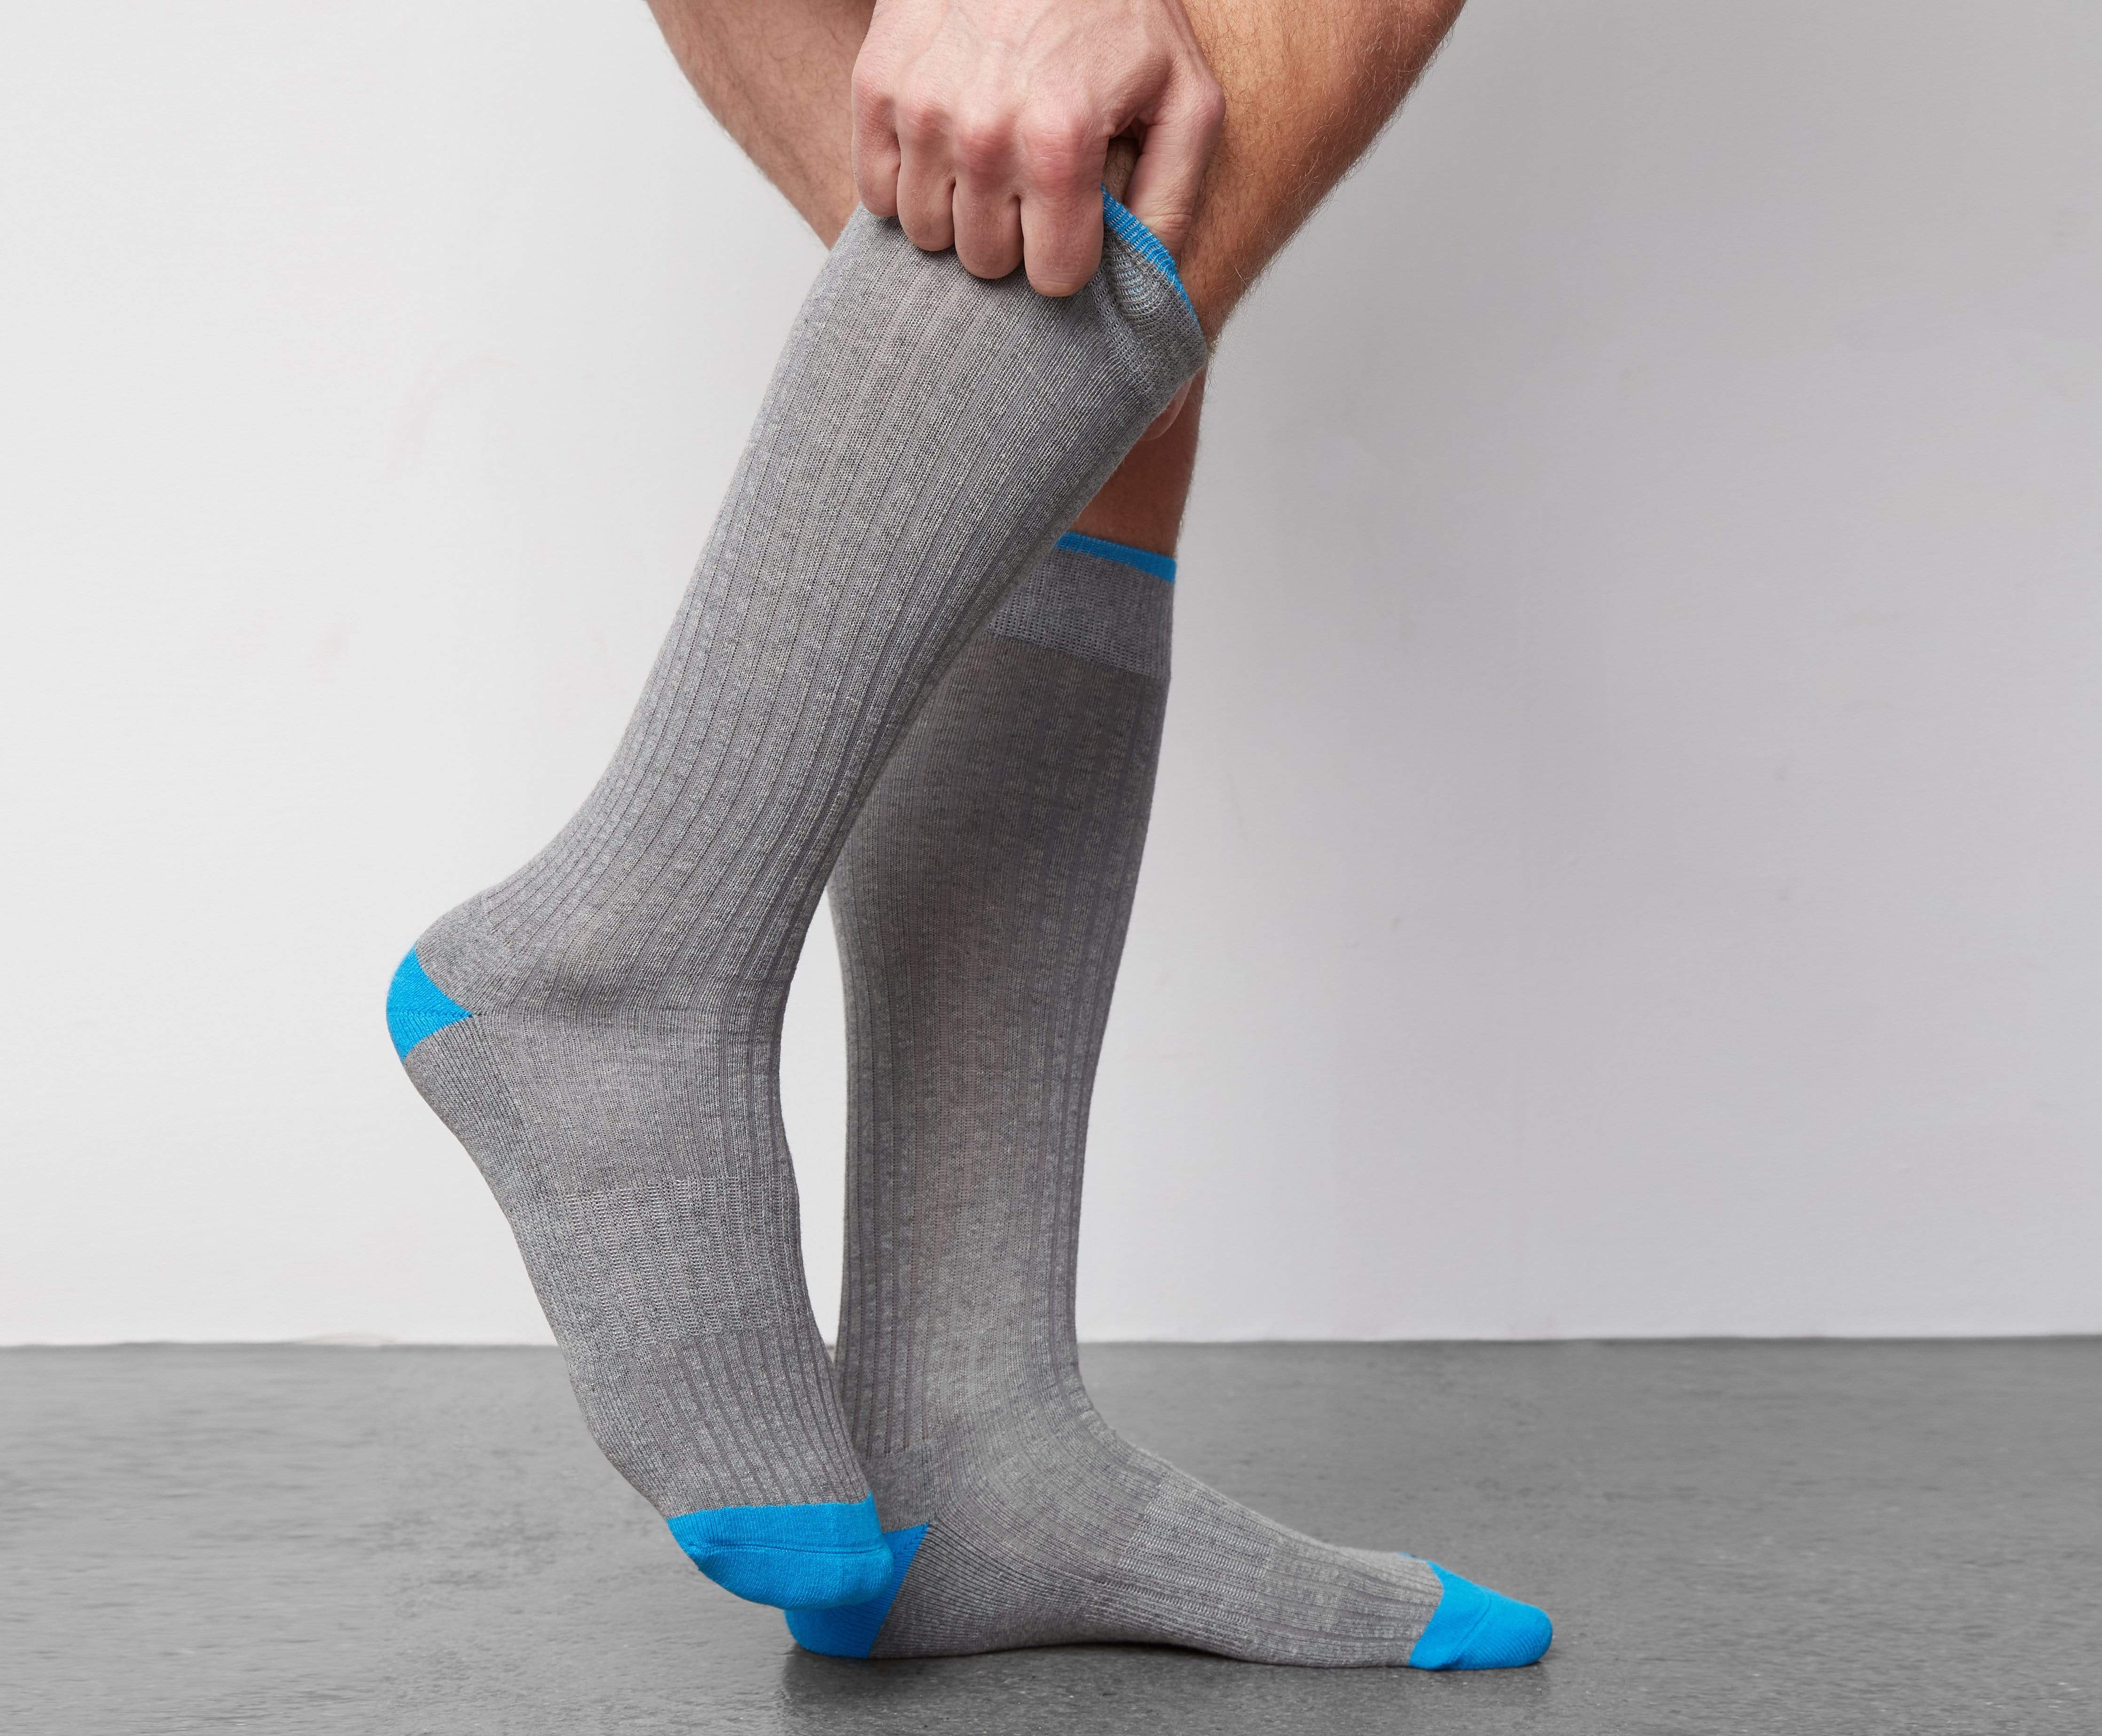 Mack Weldon Socks - Men's Socks